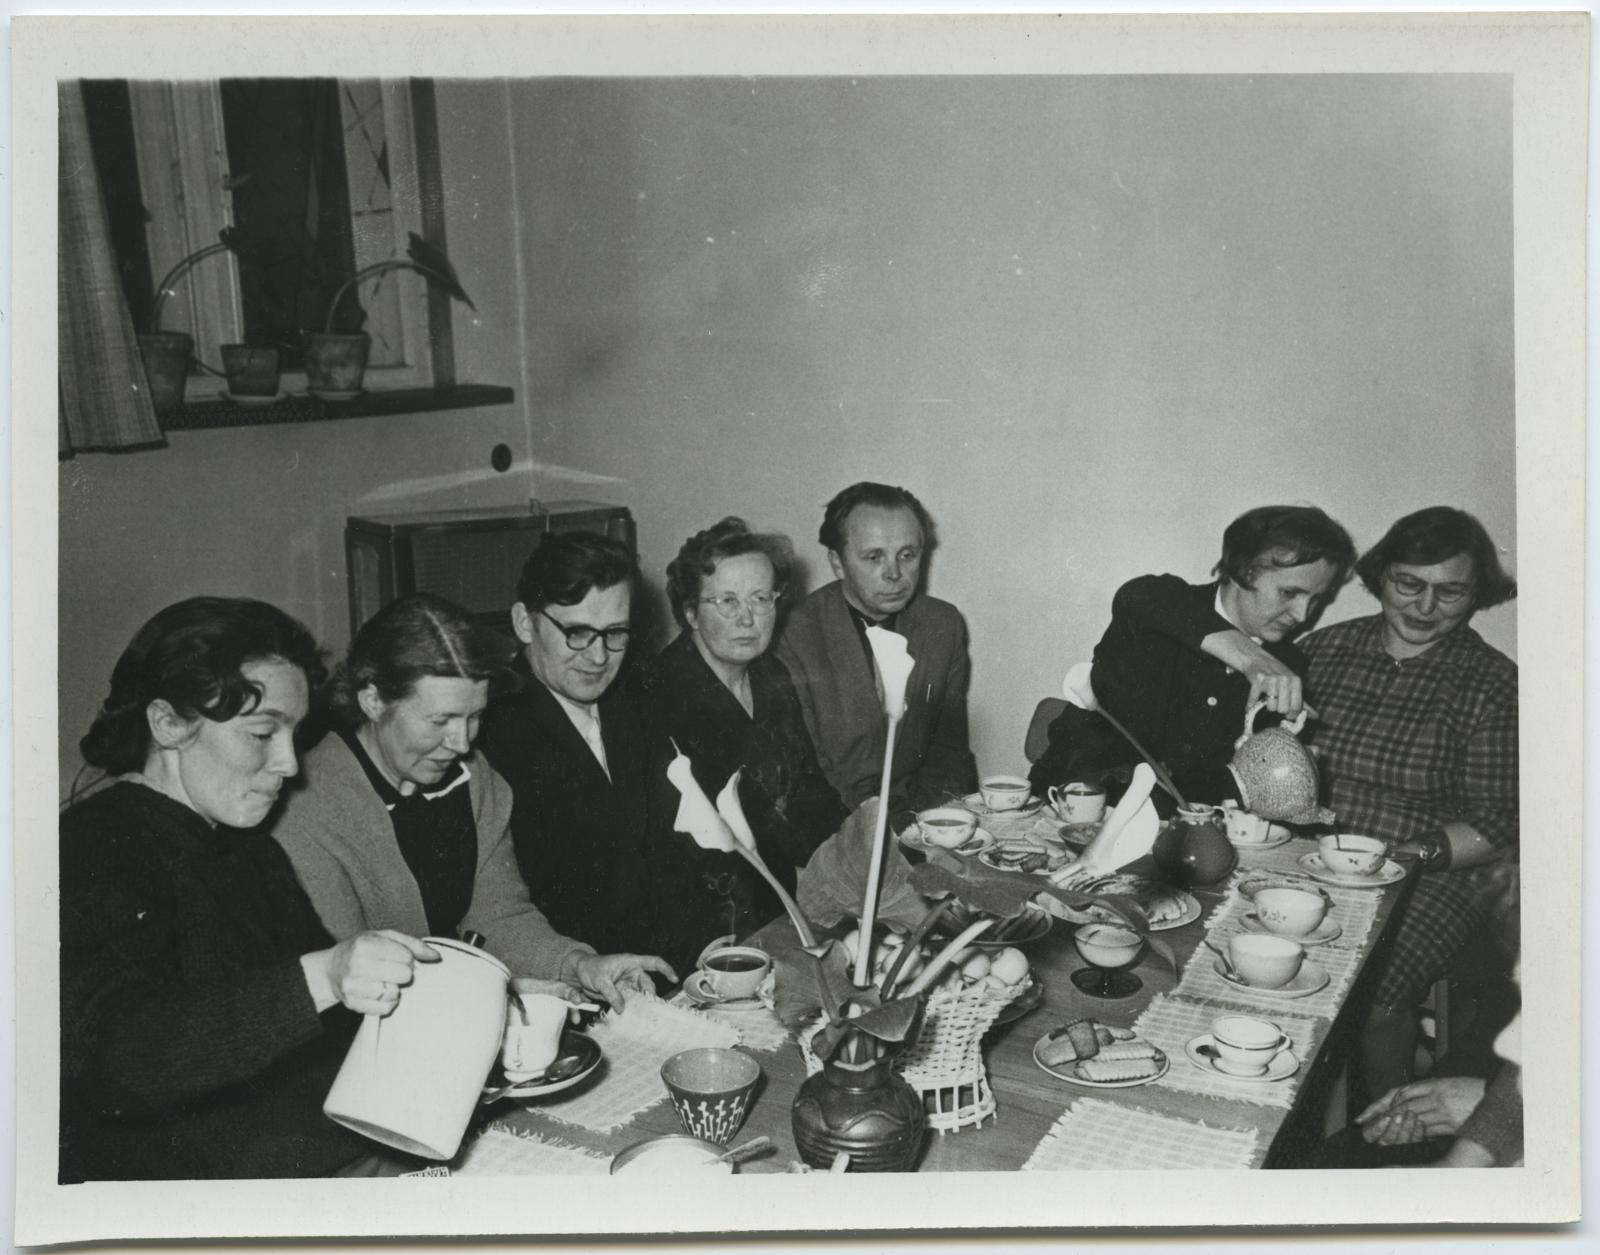 I lennu lõpetajate koosviibimine 12. jaan. 1965. Kohvilauas.